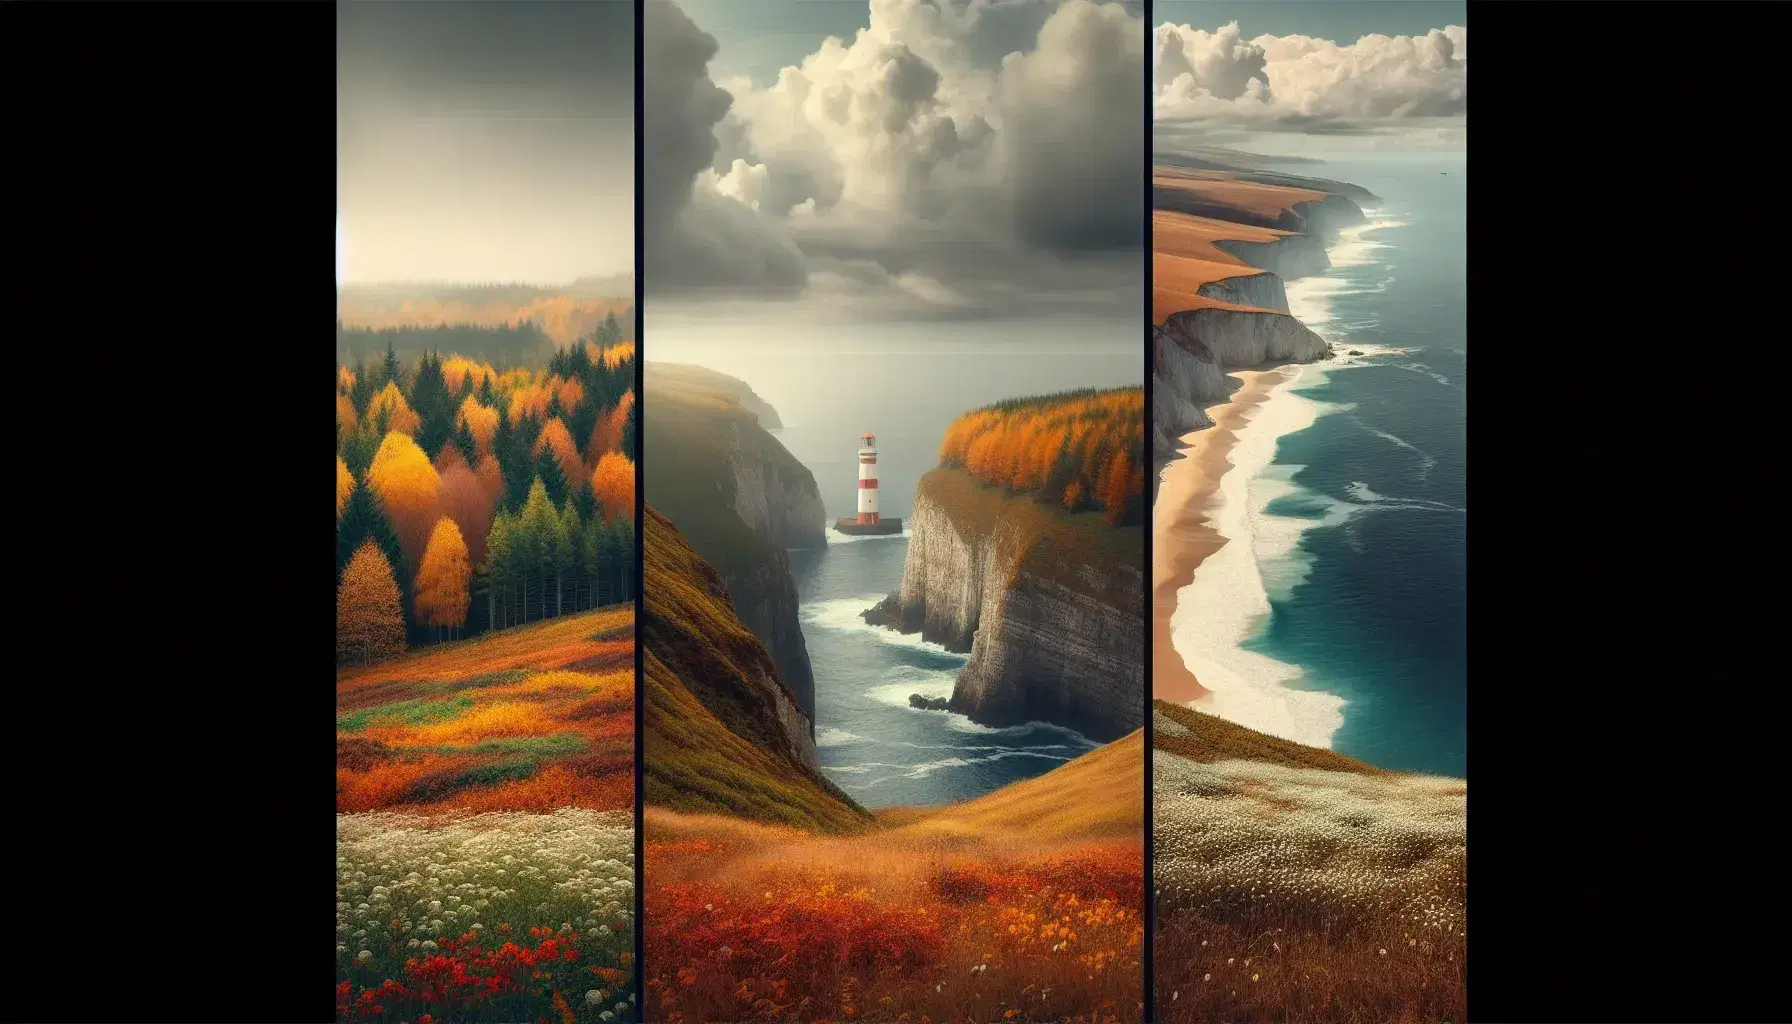 Collage fotografico dei paesaggi europei: foresta autunnale in Europa Continentale, scogliera con faro in Europa Atlantica e spiaggia mediterranea.